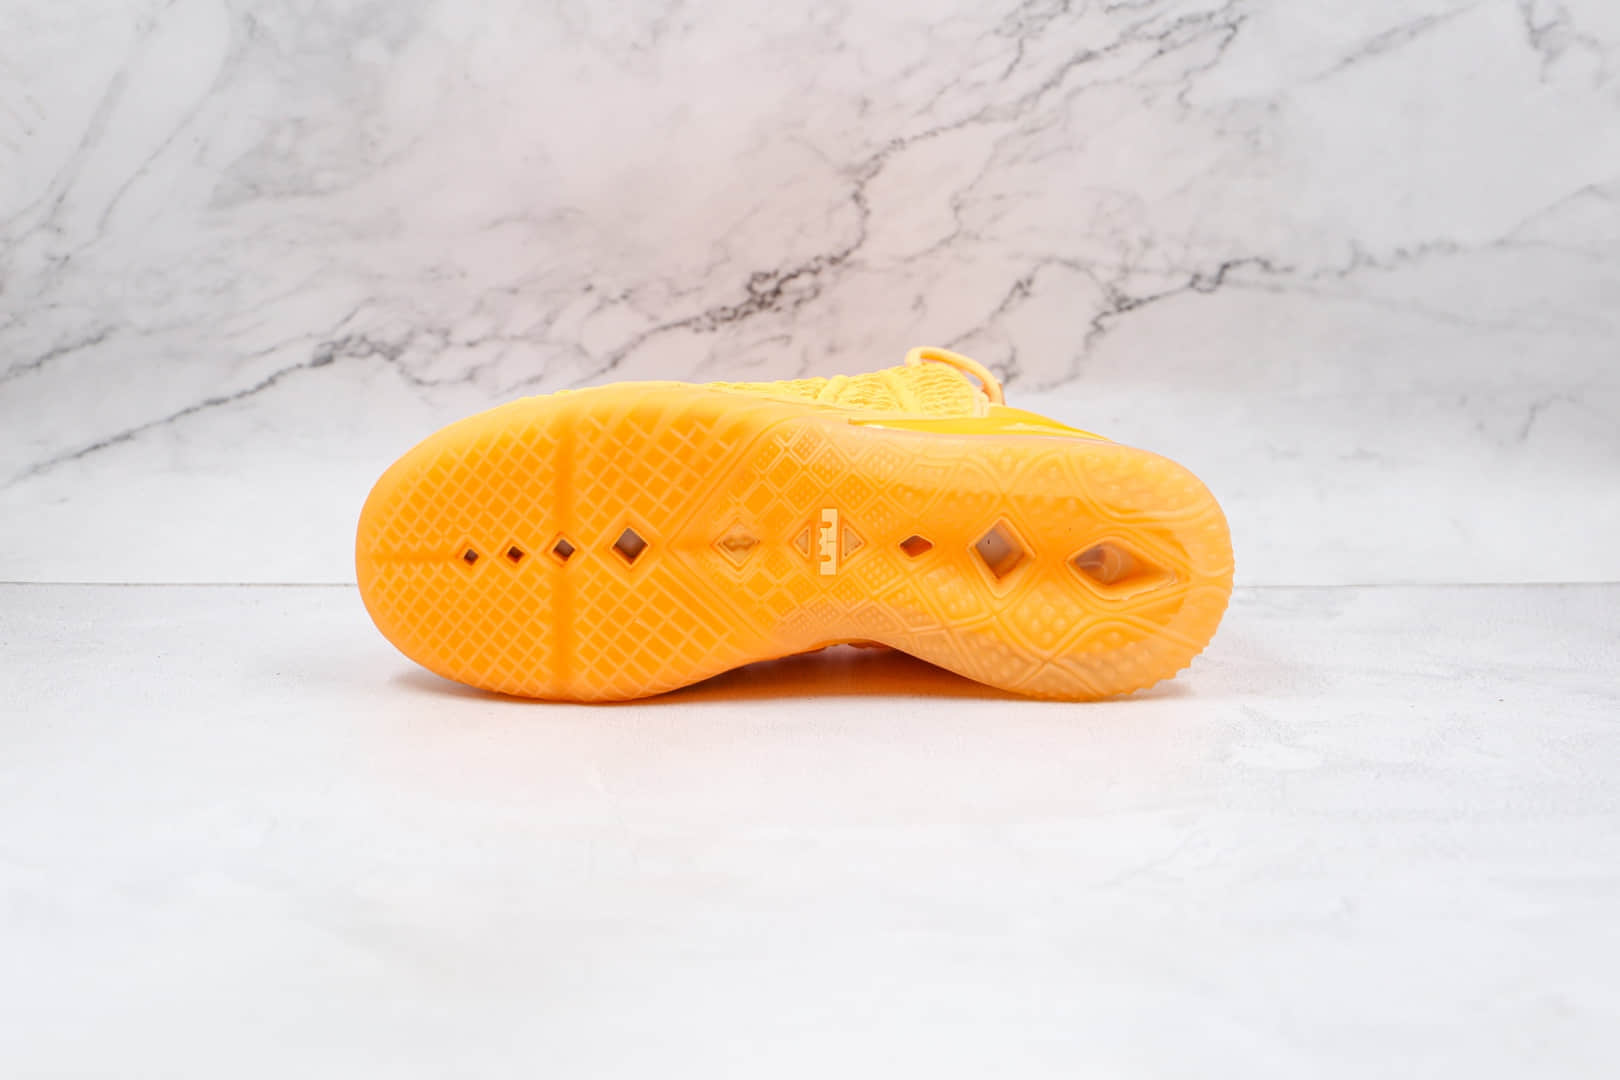 耐克NIKE LeBron 18纯原版本詹姆斯18代蜜瓜橙黄色篮球鞋支持实战 货号：DB7644-801